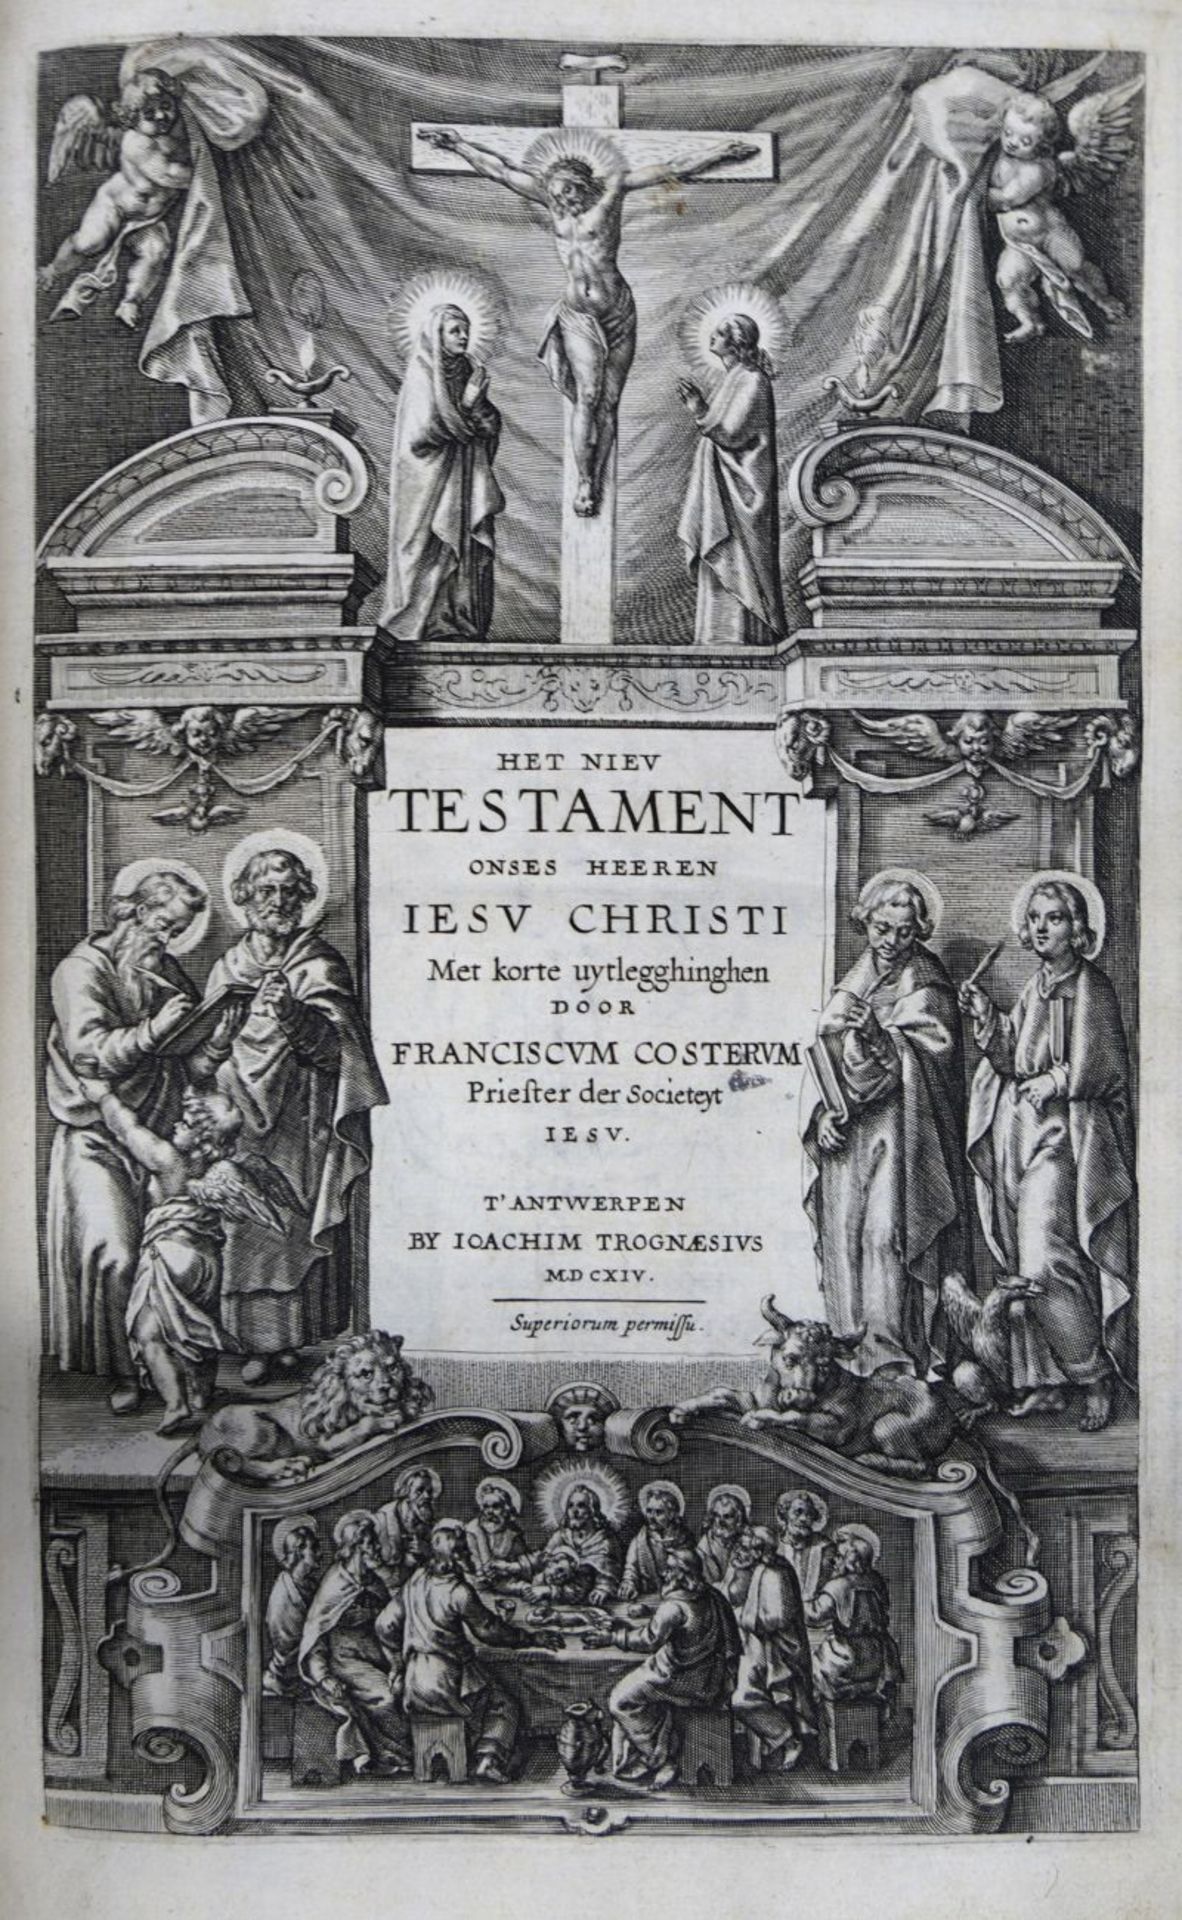 Costerus, Franciscus und Biblia nee...: Het Niev Testament onses heeren Iesu Christi